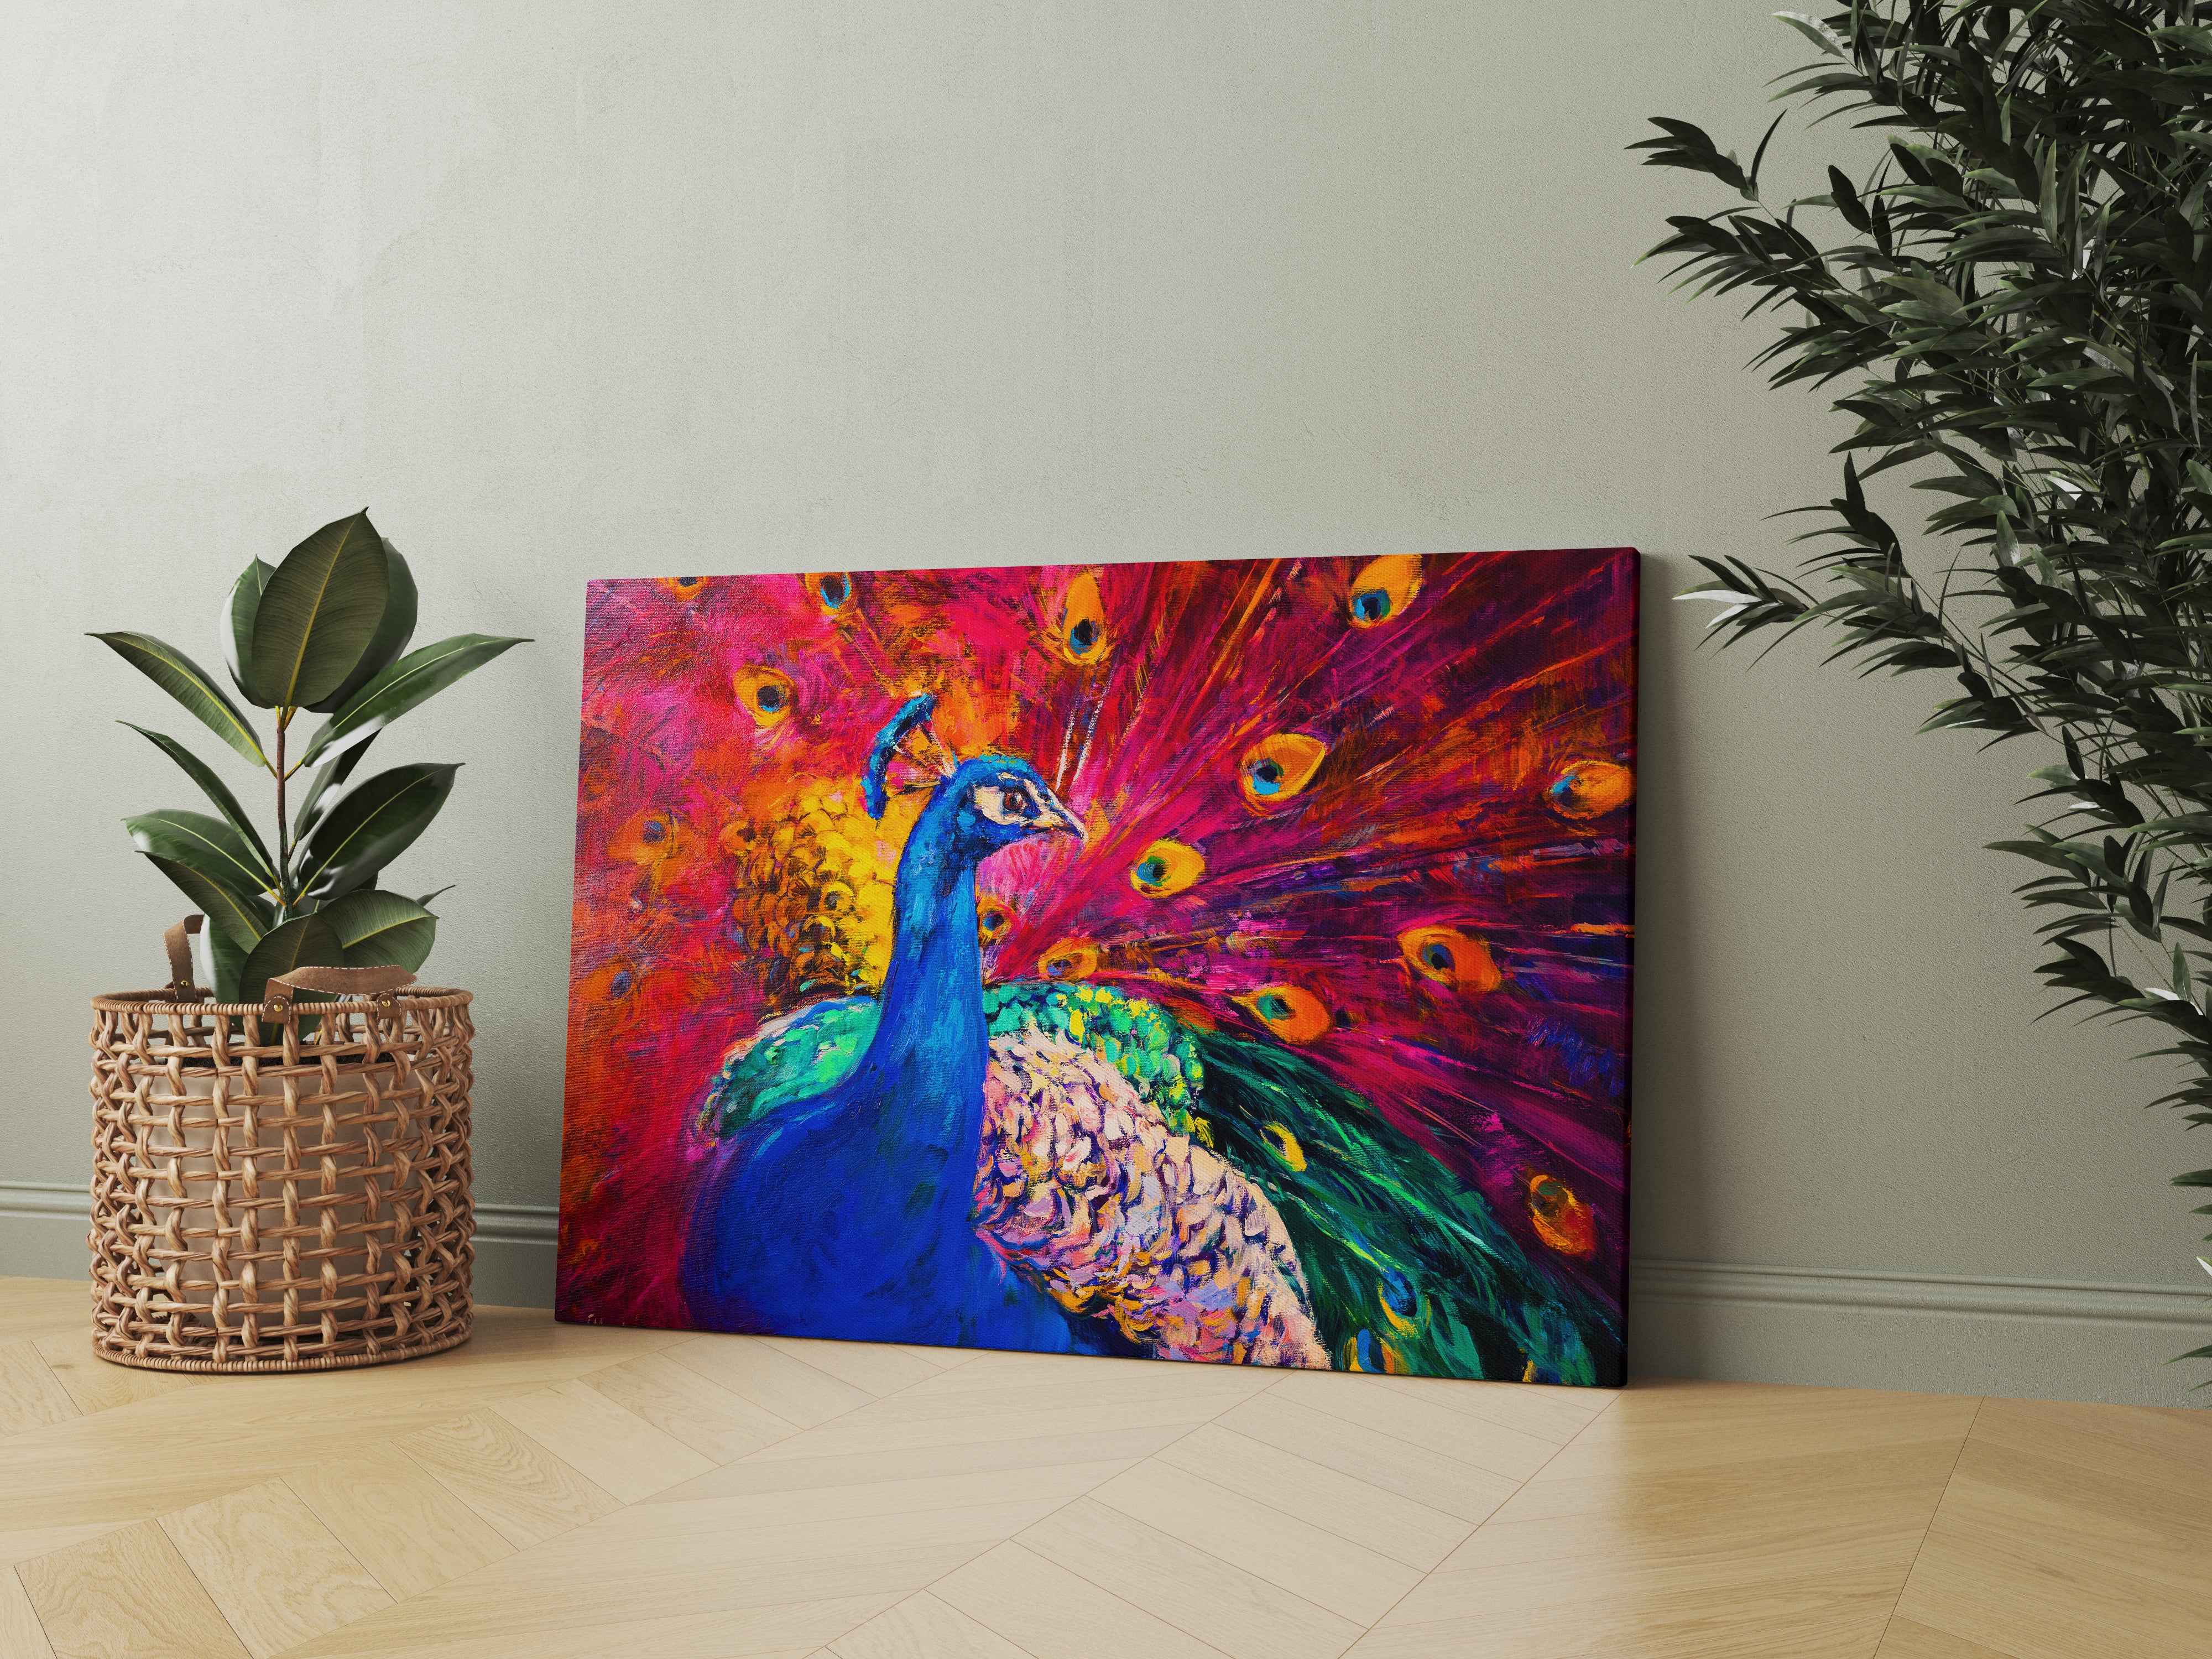 Vivid Peacock Abstract Art Wall Painting